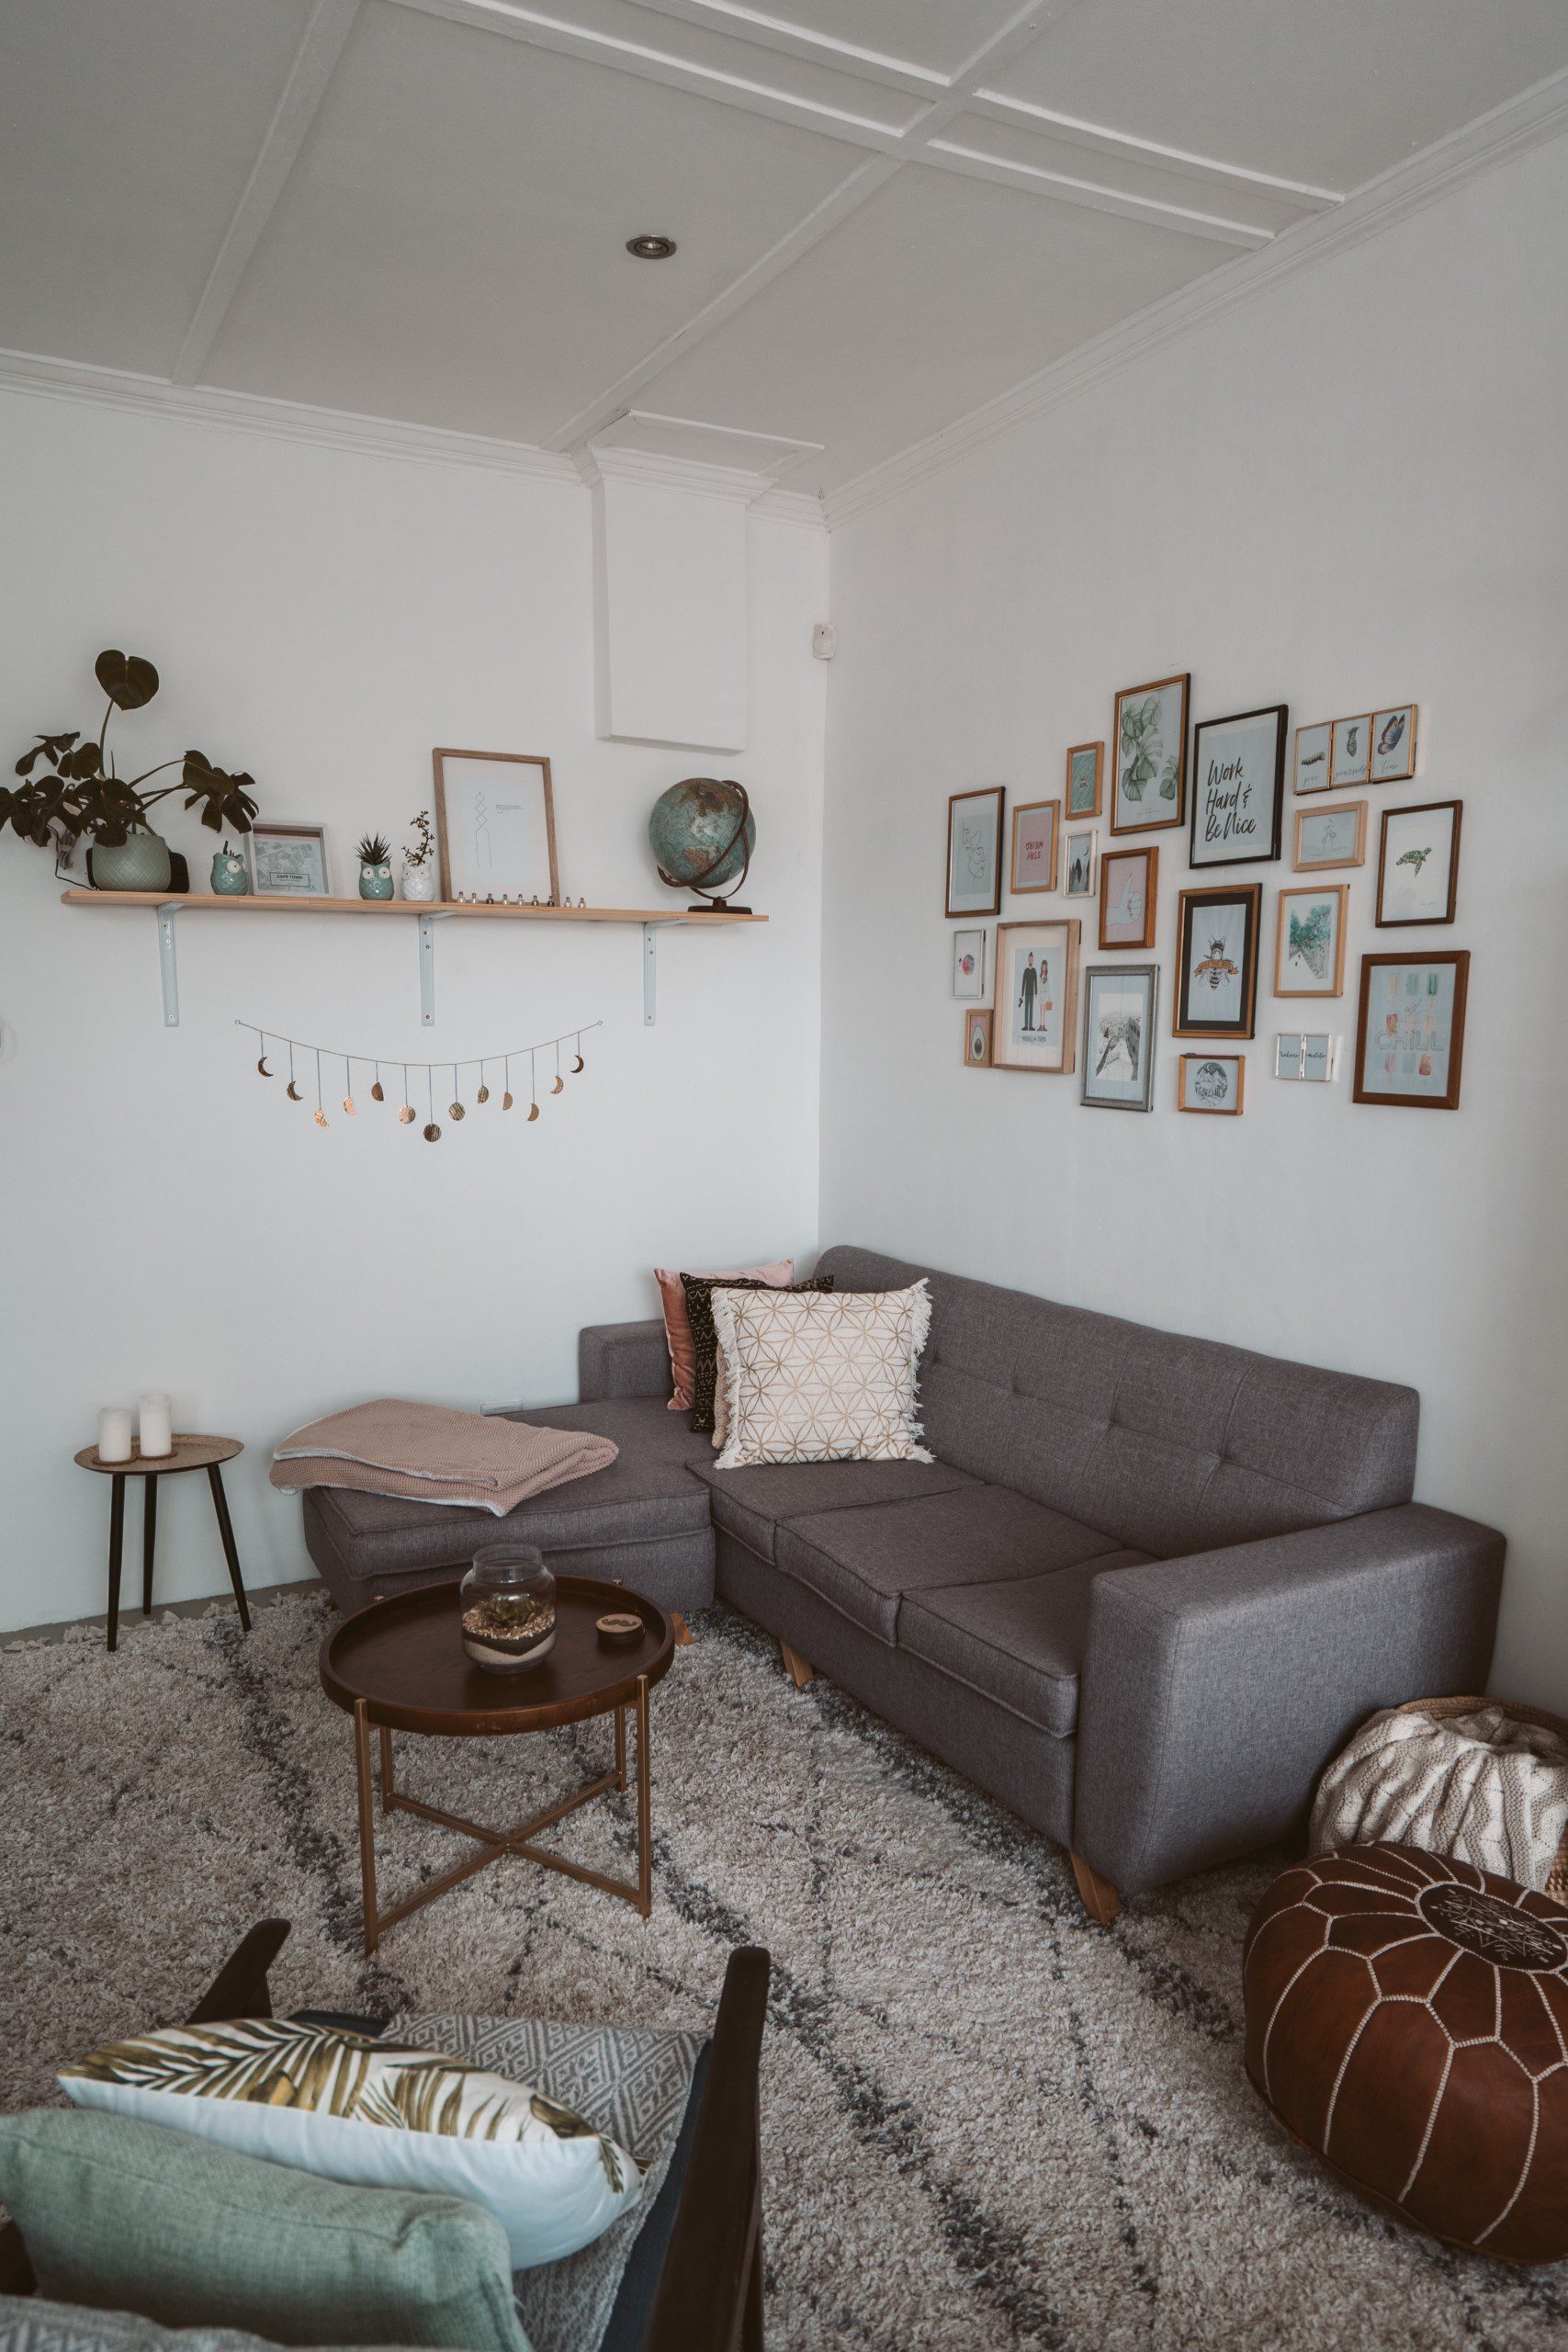 Imagem de uma sala de estar com uma parede com uma composição de diferentes quadros.